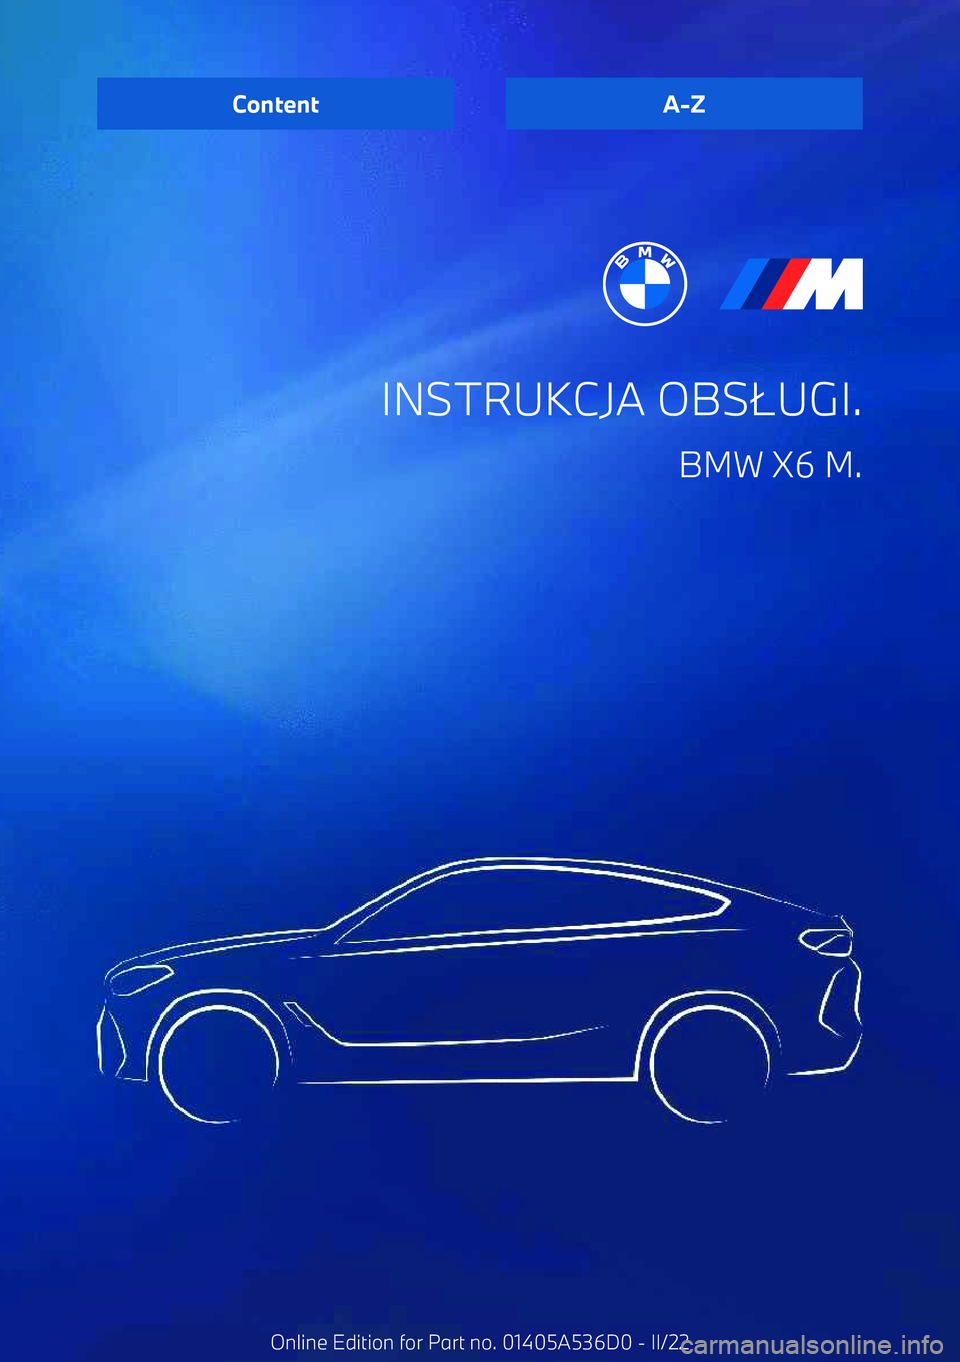 BMW X6 M 2022  Instrukcja obsługi (in Polish) INSTRUKCJA OBS.UGI.
BMW X6 M.ContentA